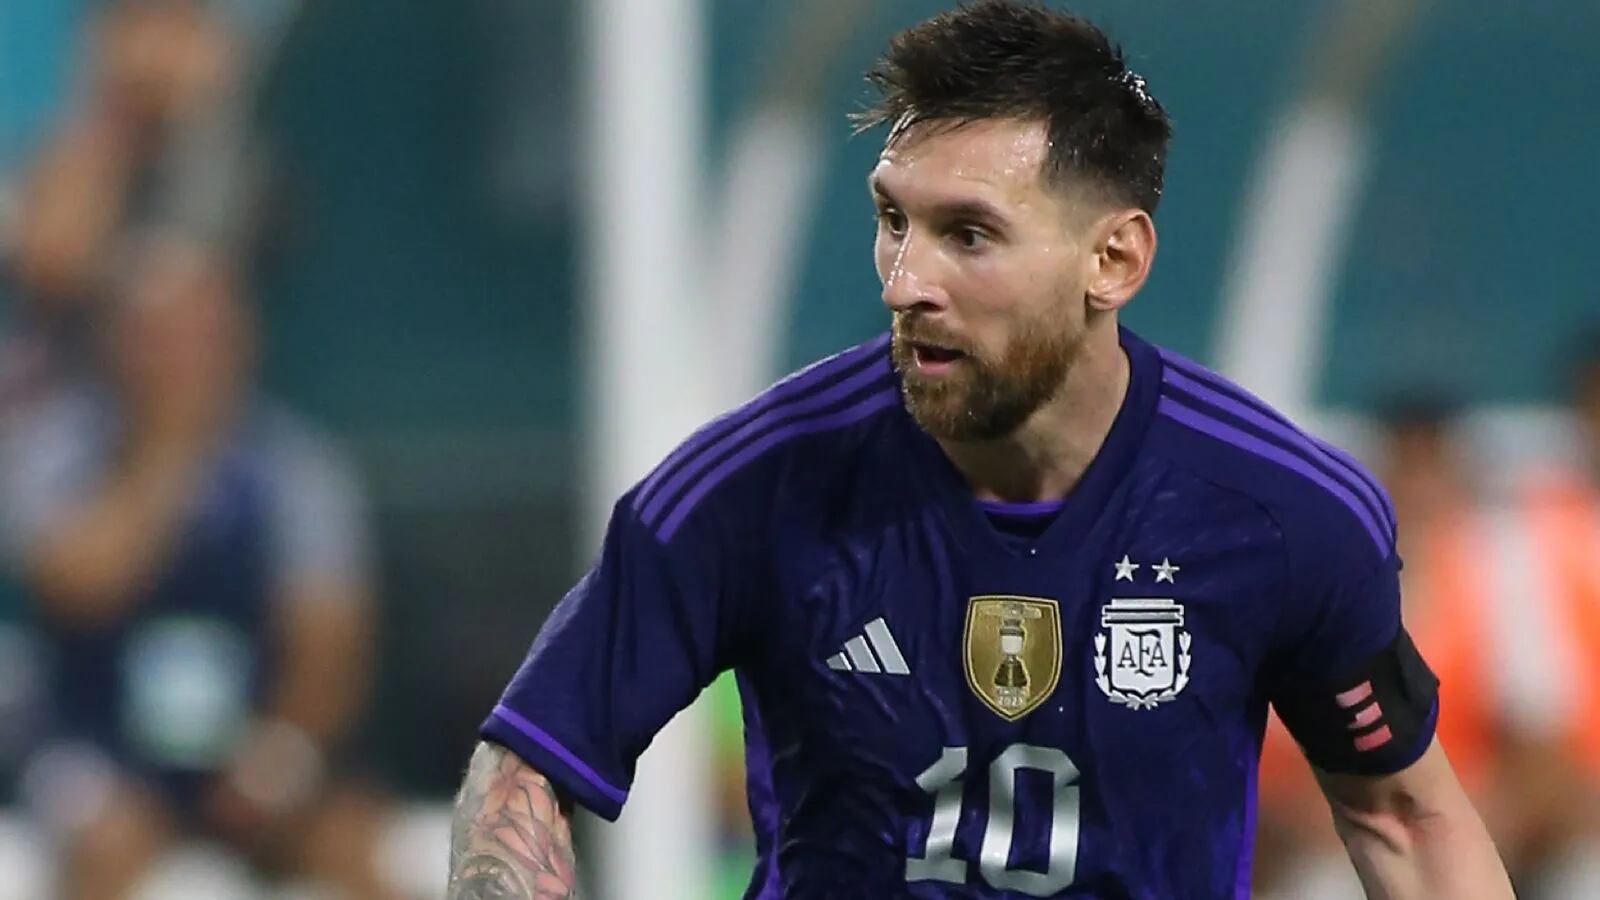 Tras la goleada, Lionel Messi le habló a los hinchas: “Estamos con la misma ansiedad, ganas e ilusión que ellos”